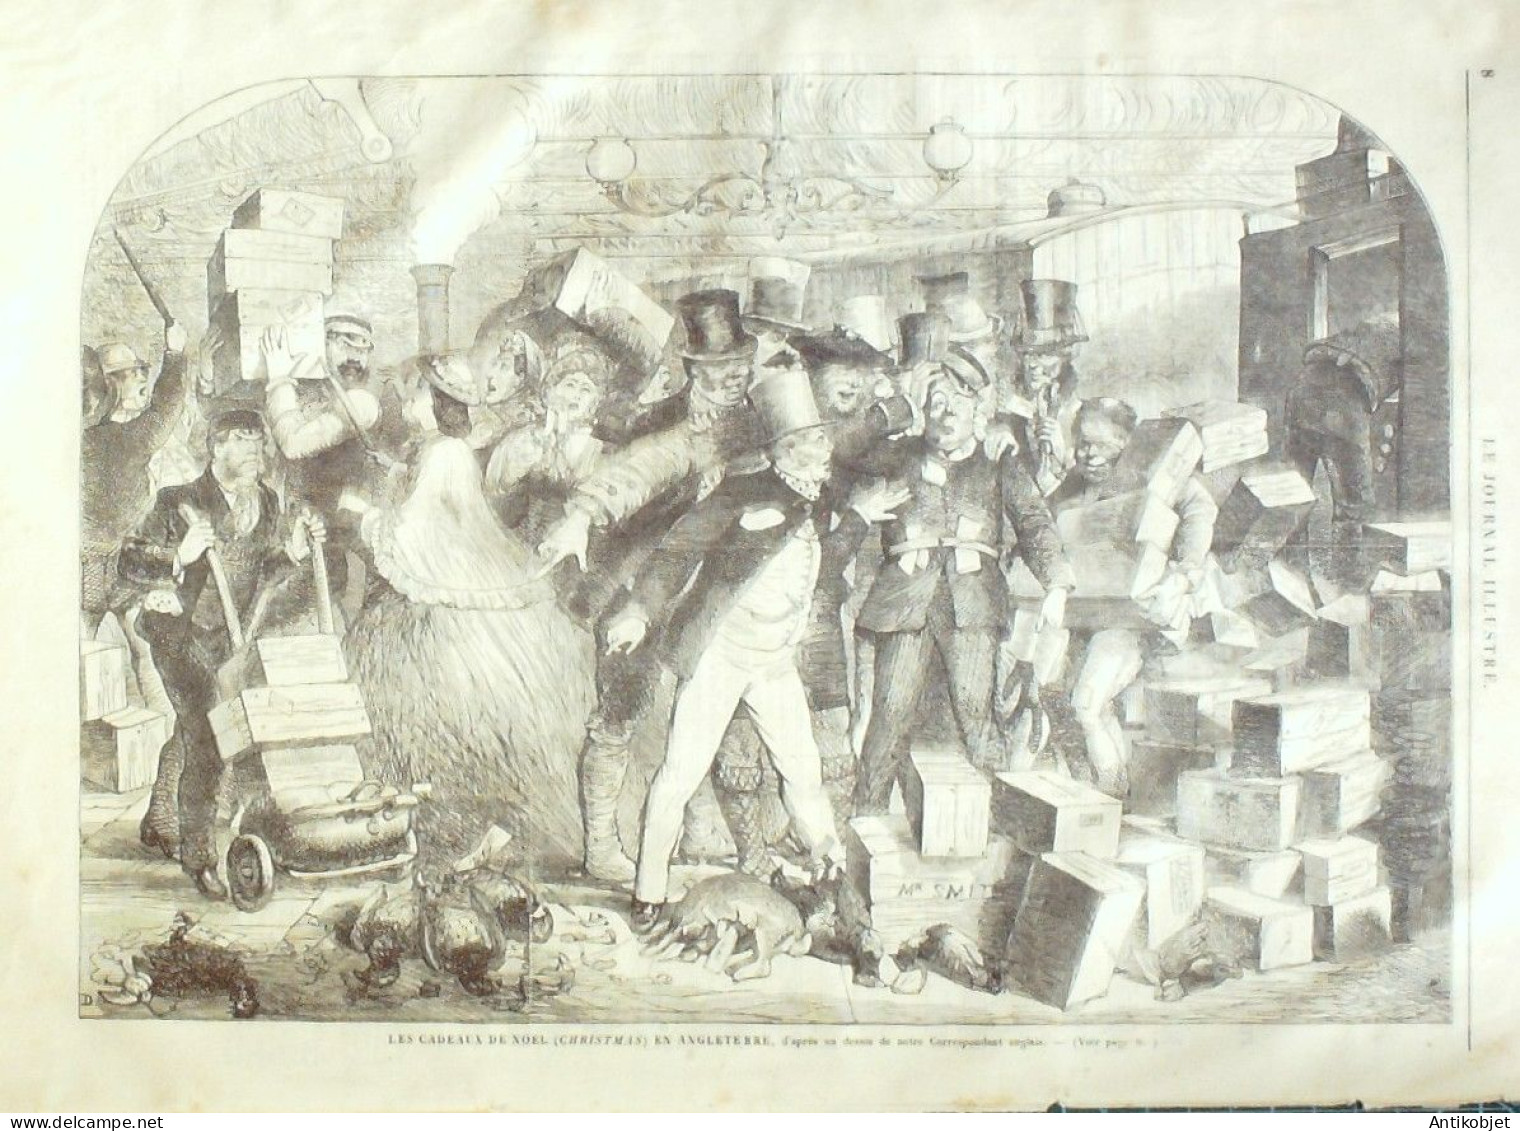 Le Journal Illustré 1865 N°47 Tours (37) Angleterre Noel Christmas - 1850 - 1899